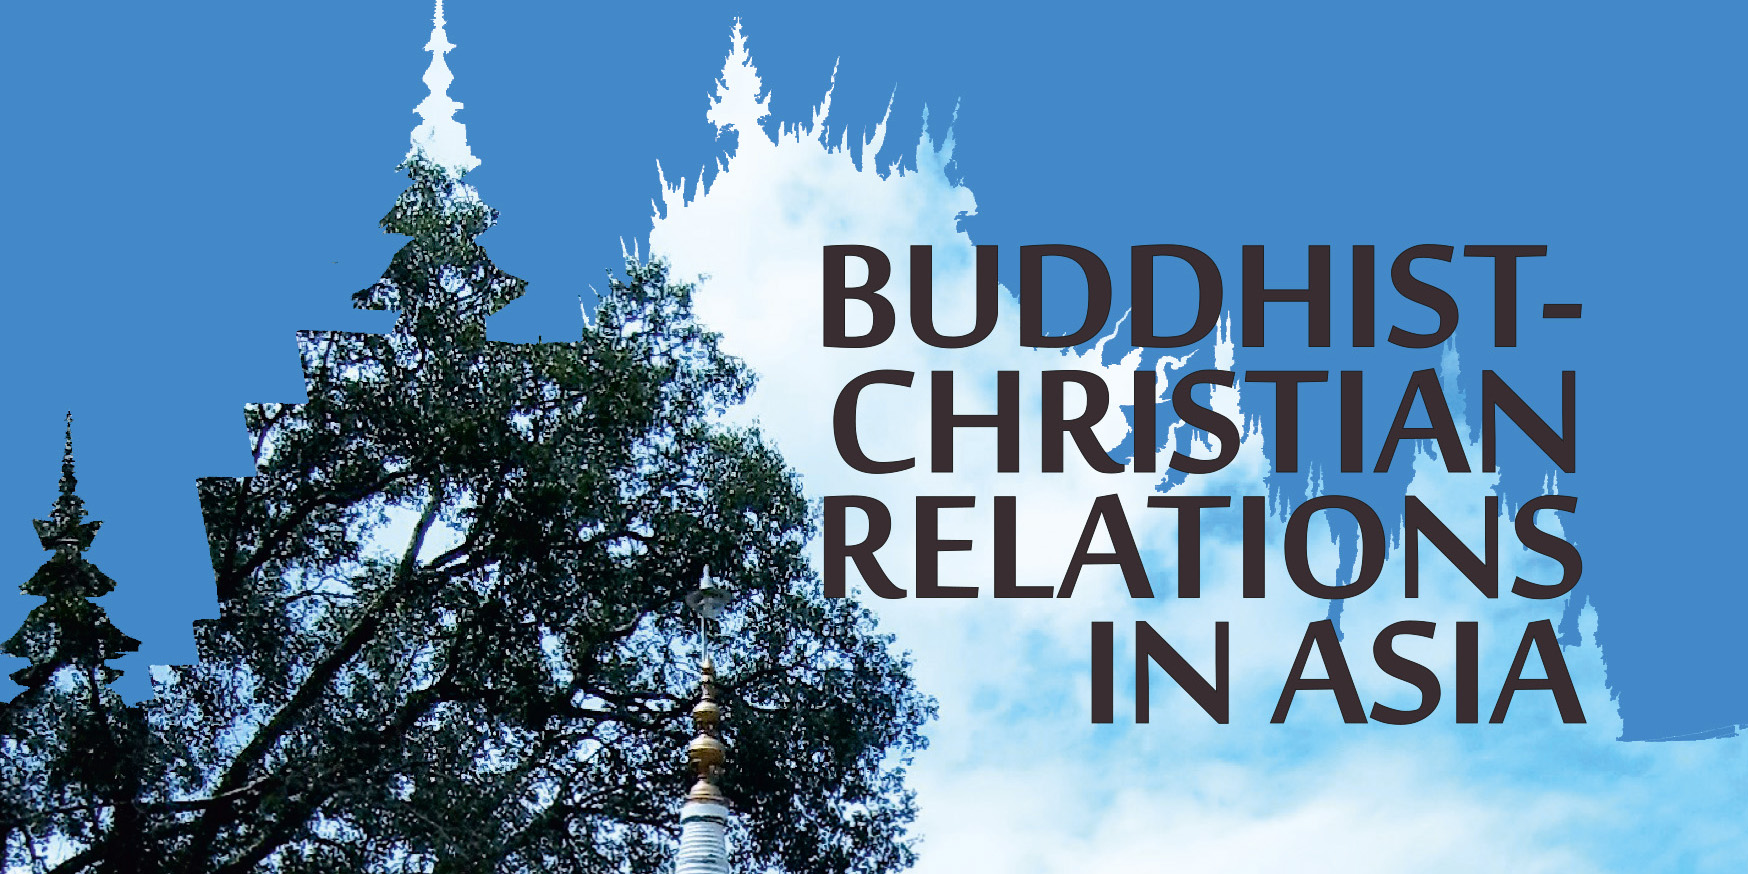 News Buch Schmidt-leukel Buddhist-christian Relations 2 1